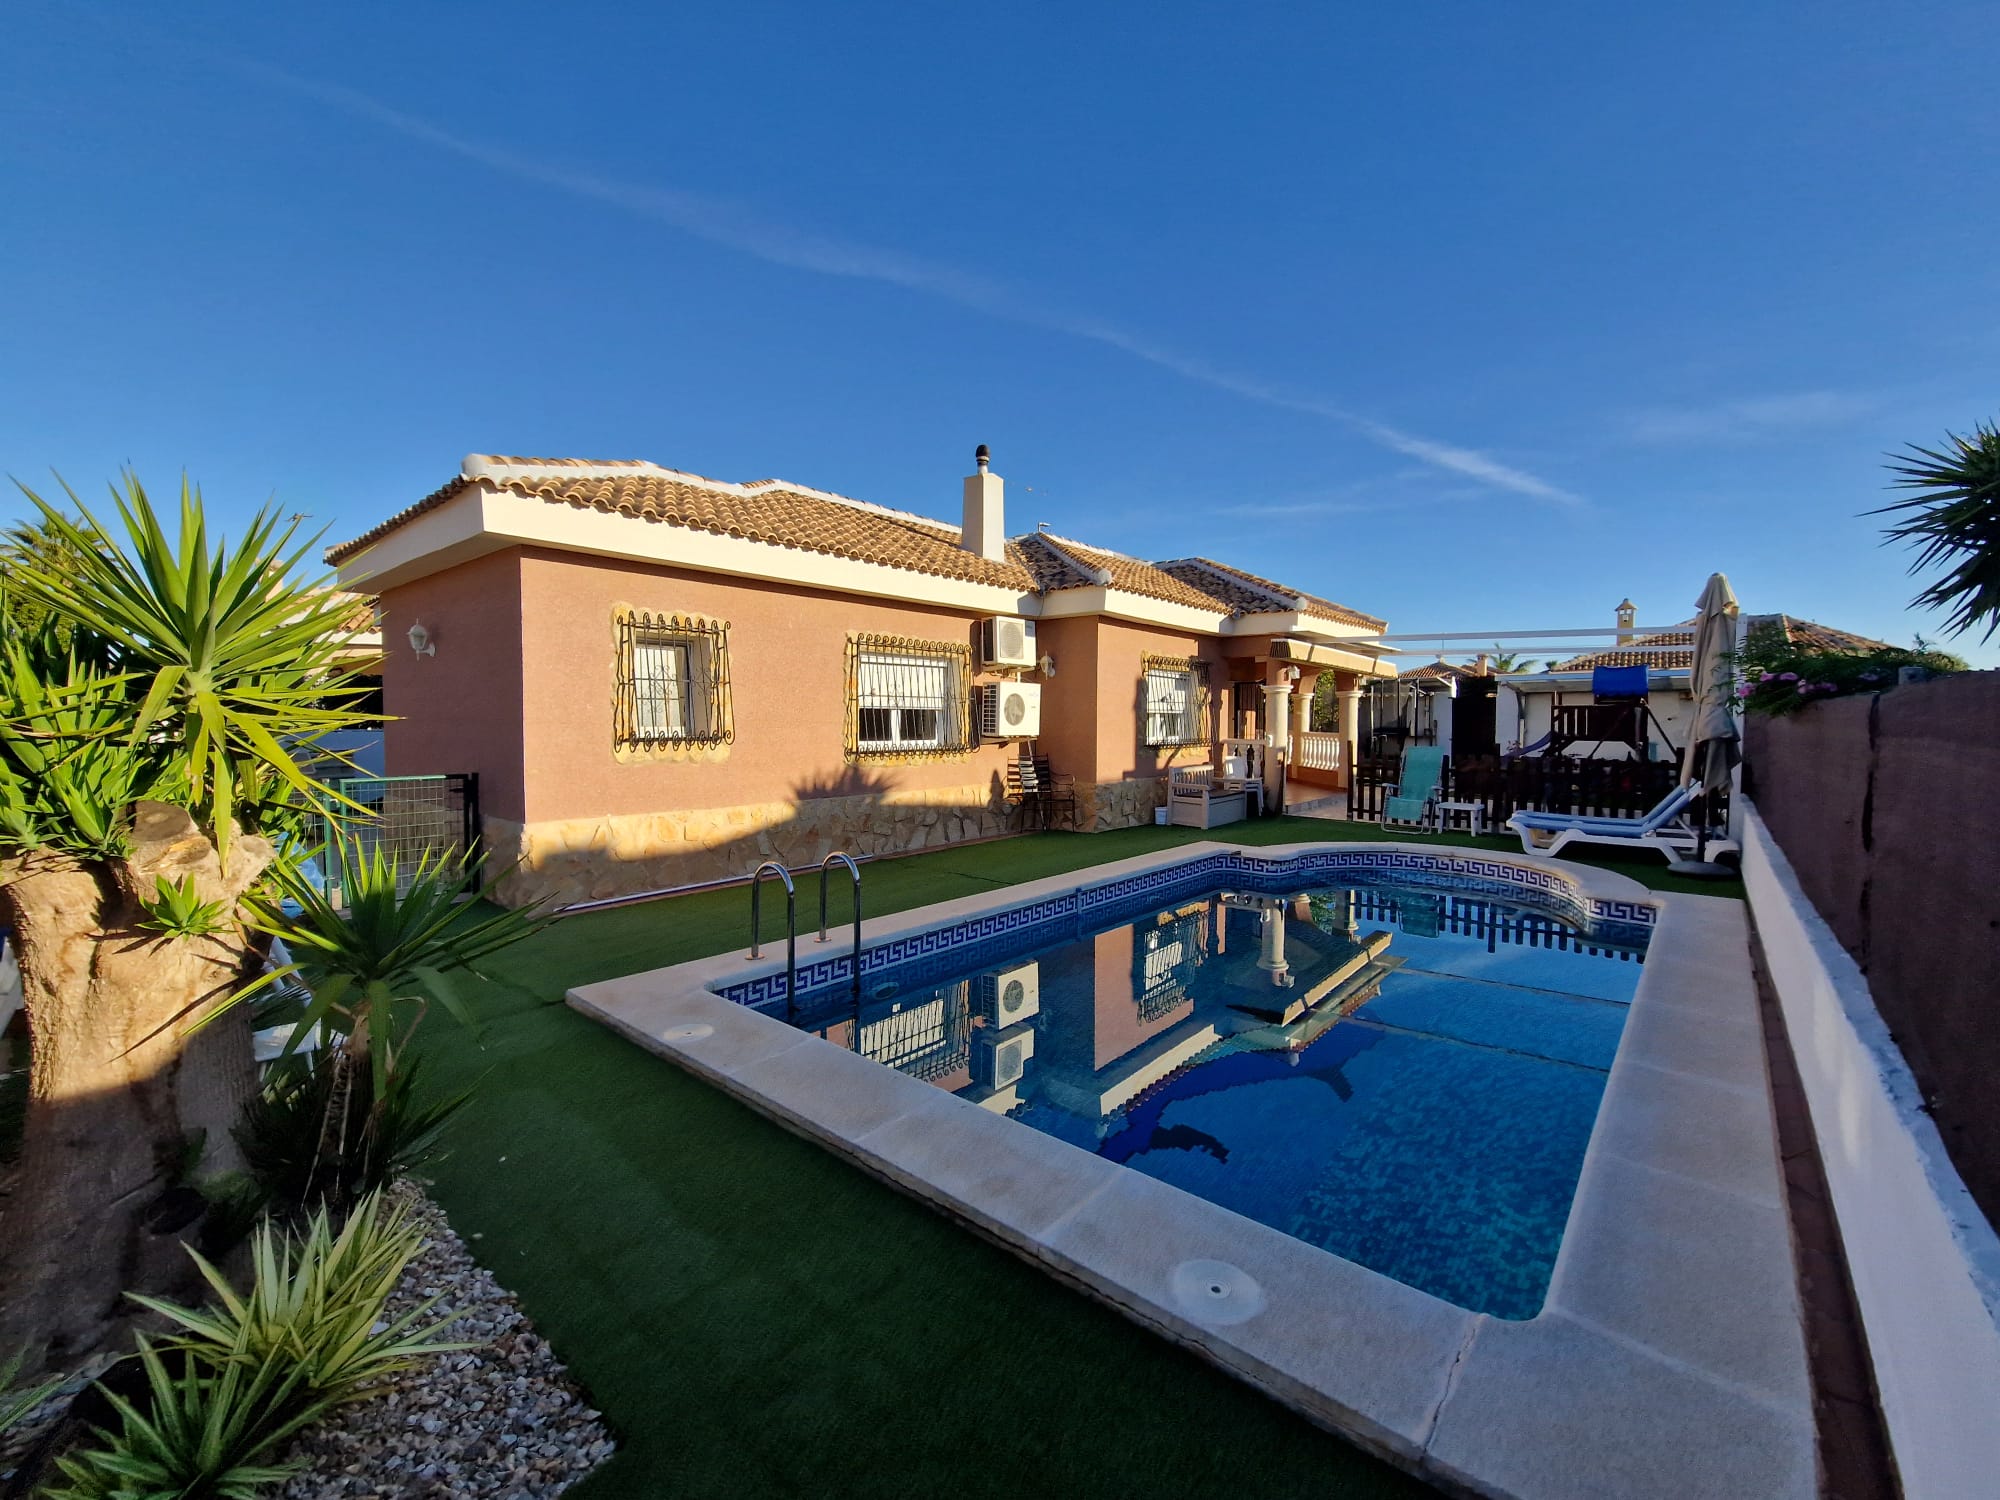 4 Bed 2 Bath Detached South-facing Villa with Private Pool – Lo Santiago – Murcia